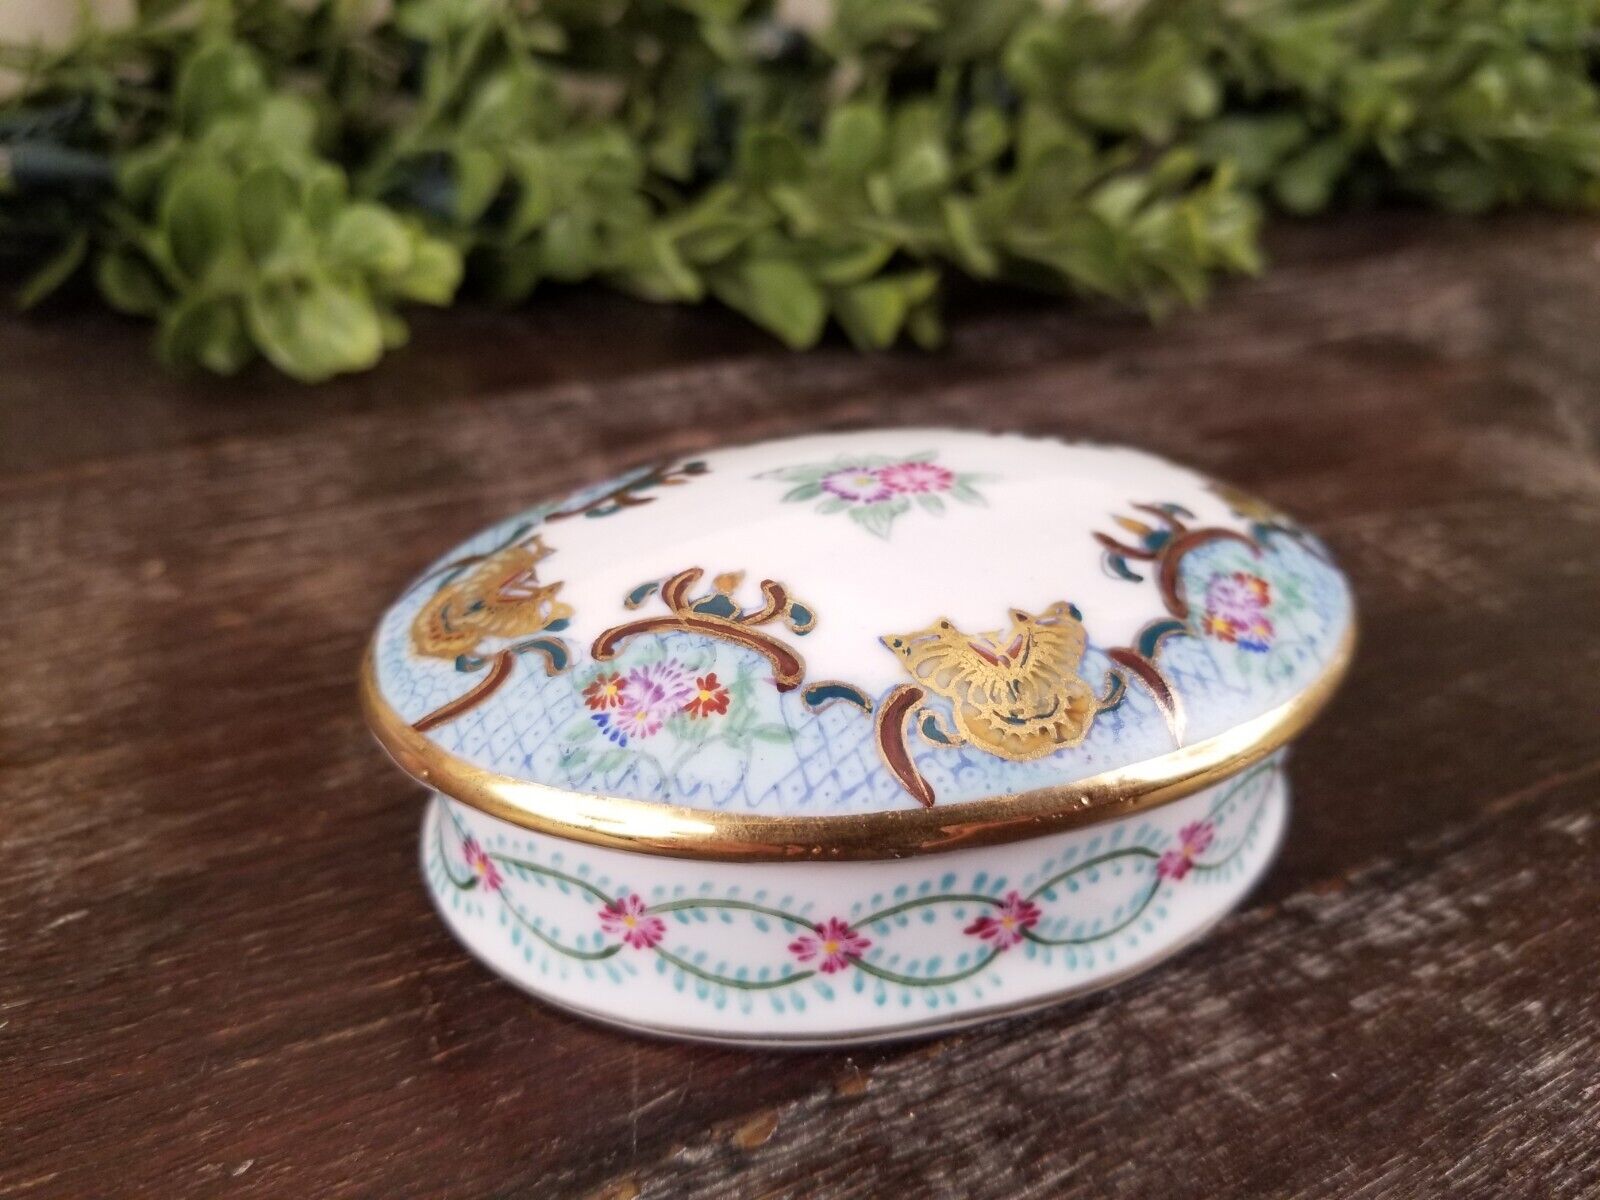 Vintage Oval Limoges Trinket or Jewel Box Hand Painted Floral Gilt Porcelain